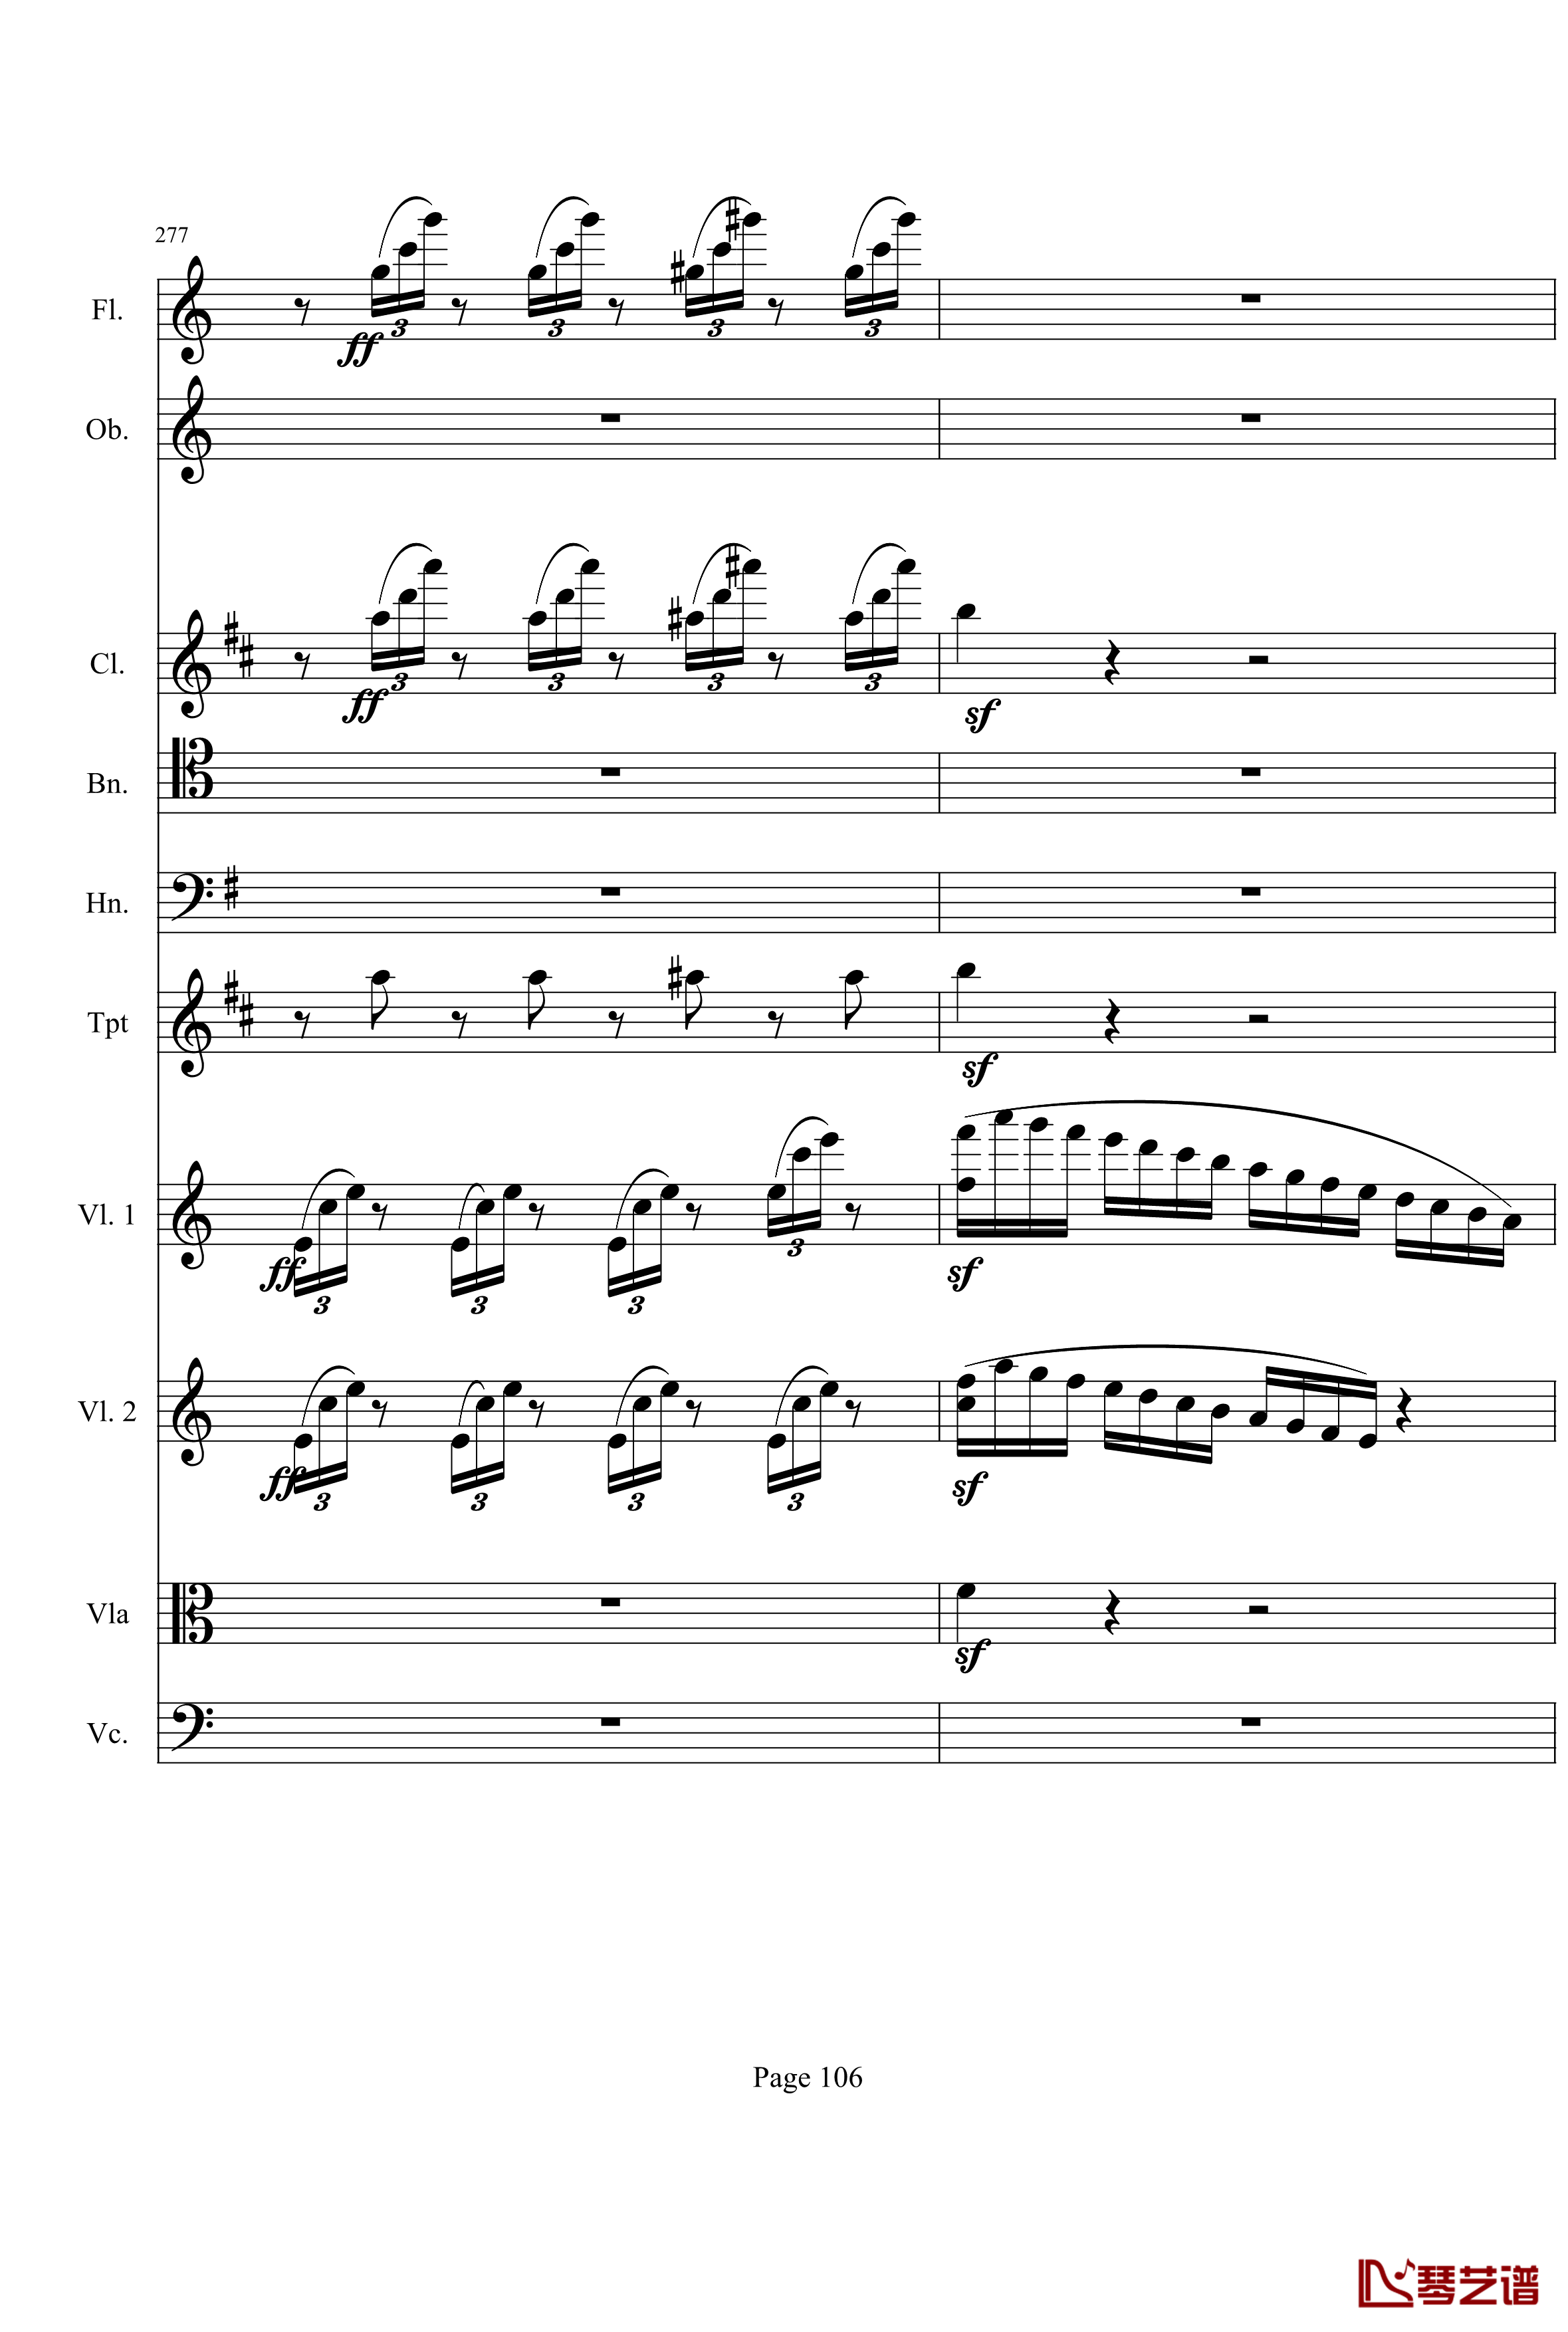 奏鸣曲之交响钢琴谱-第21-Ⅰ-贝多芬-beethoven106